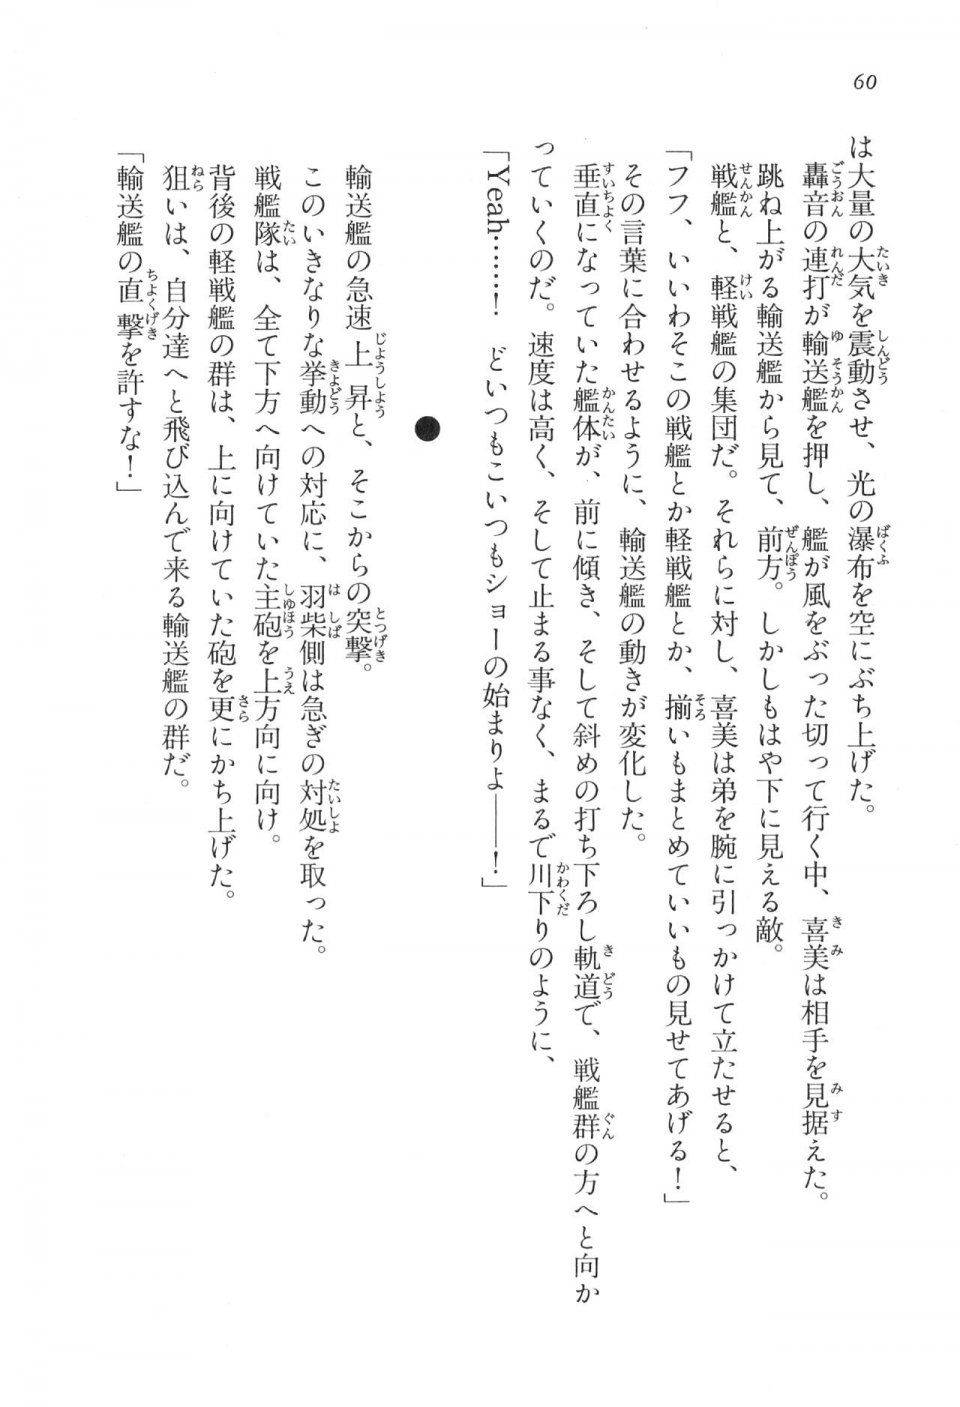 Kyoukai Senjou no Horizon LN Vol 17(7B) - Photo #60